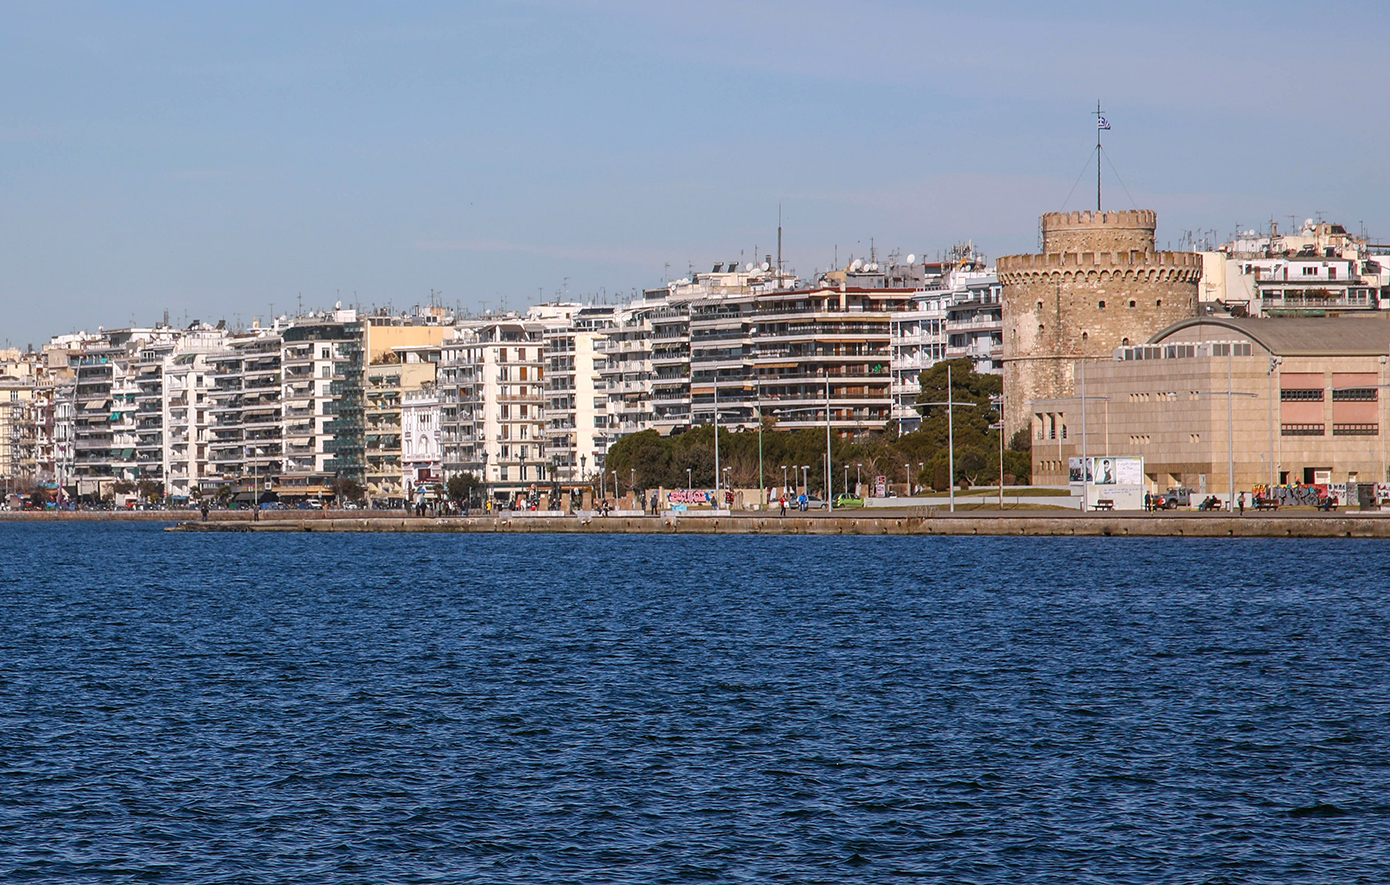 Κατέστρεψαν τις δημοτικές τουαλέτες στη Νέα Παραλία Θεσσαλονίκης – Ο δήμος κατέθεσε μήνυση